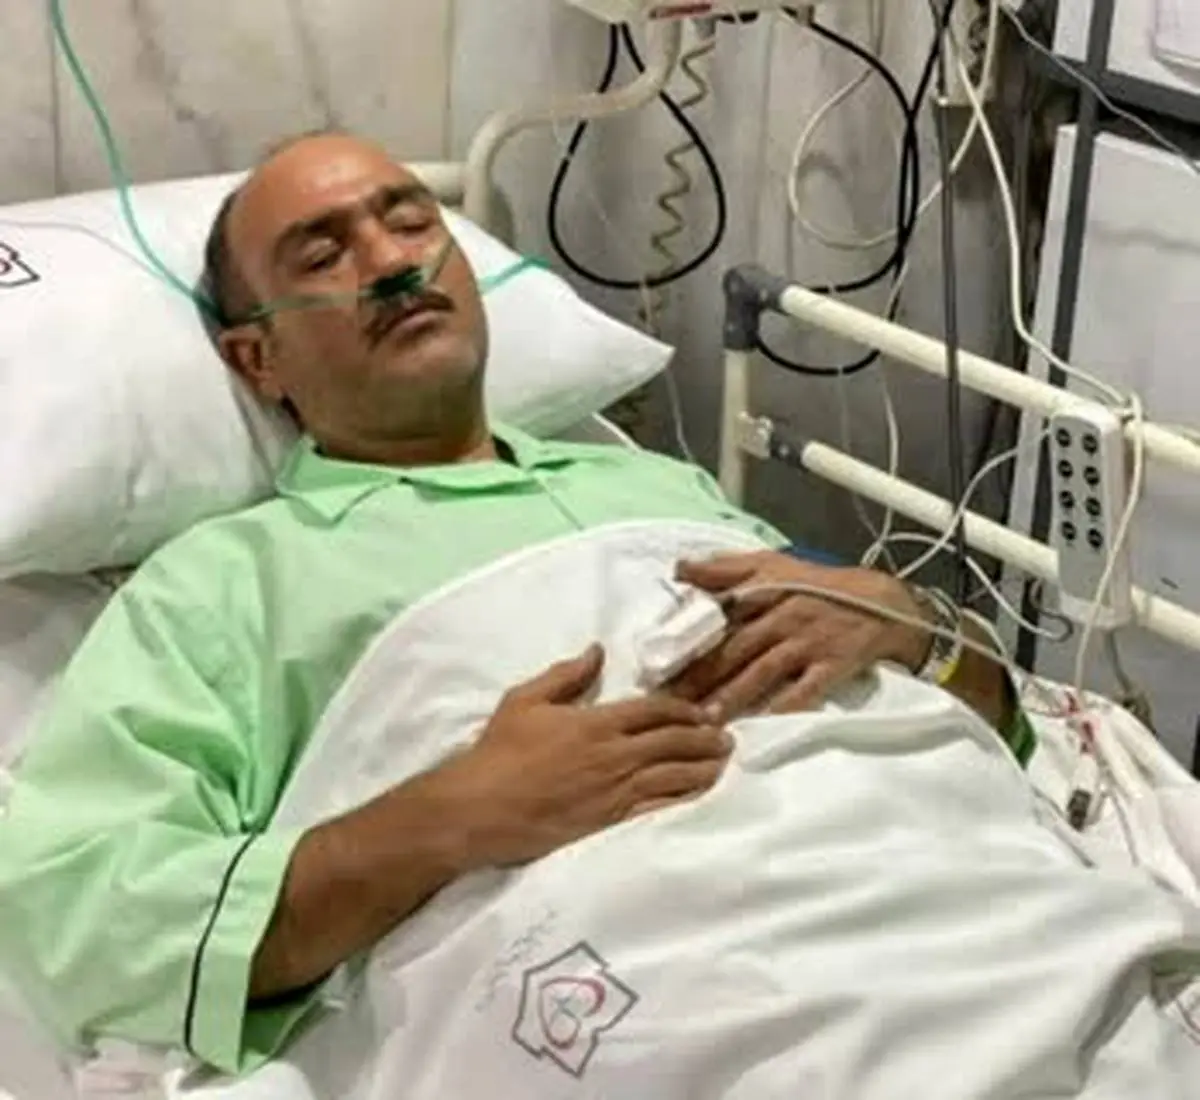 اولین تصویر از مهران غفوریان در بیمارستان | برای حال بد مهران غفوریان دعا کنید